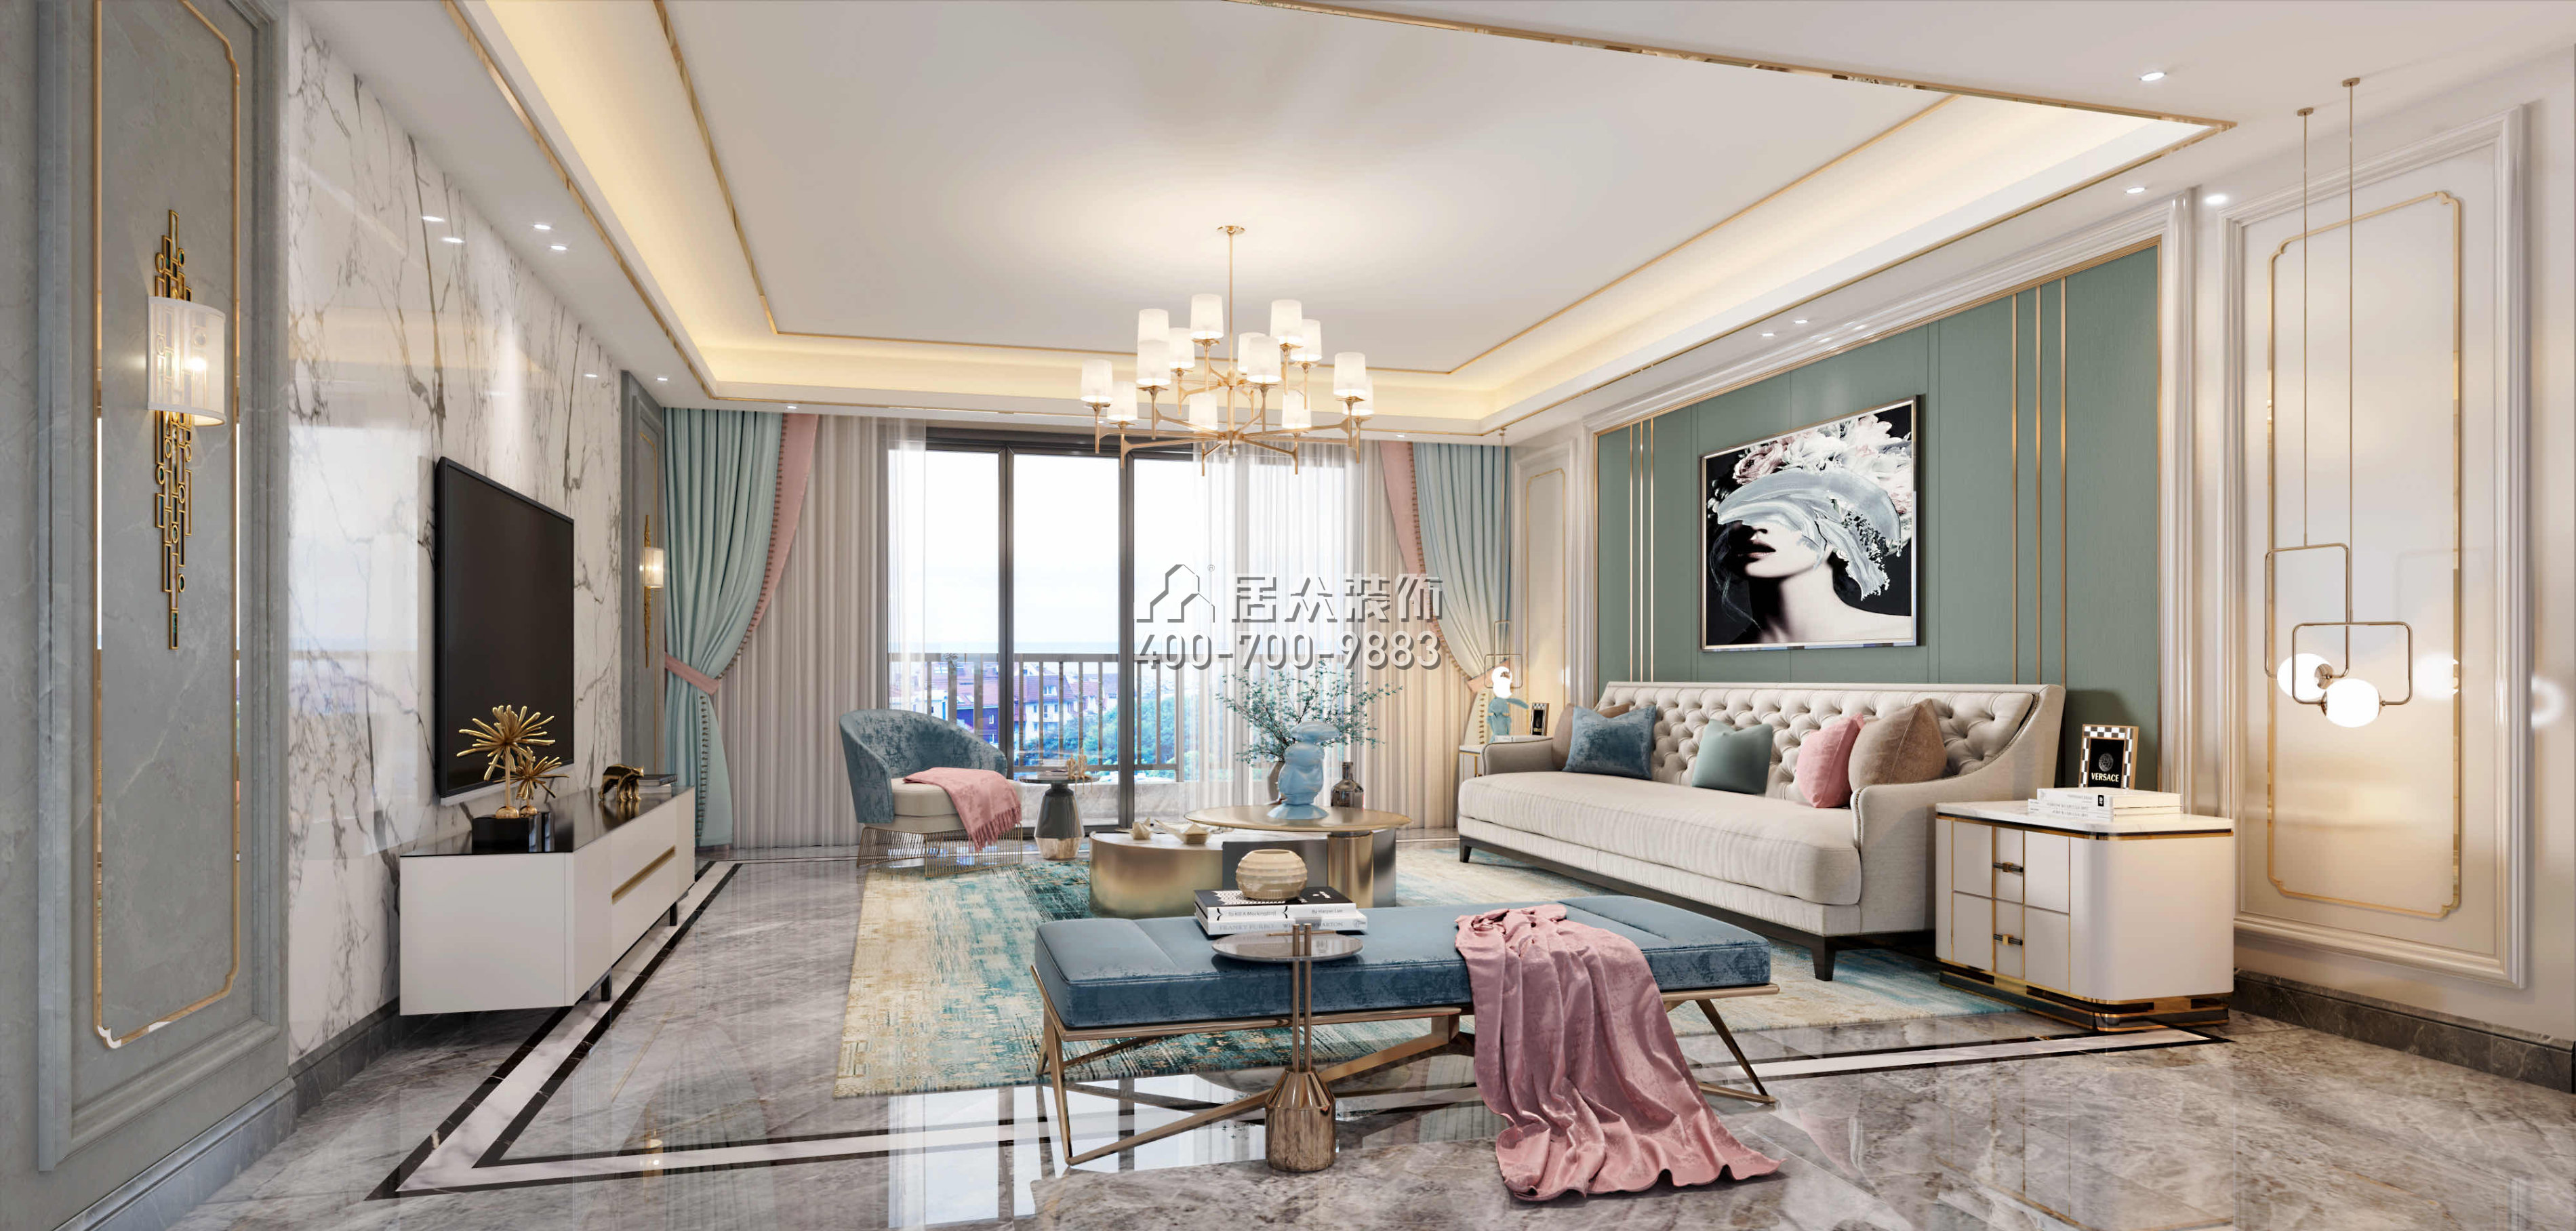 翡翠山湖一期180平方米現代簡約風格平層戶型客廳裝修效果圖